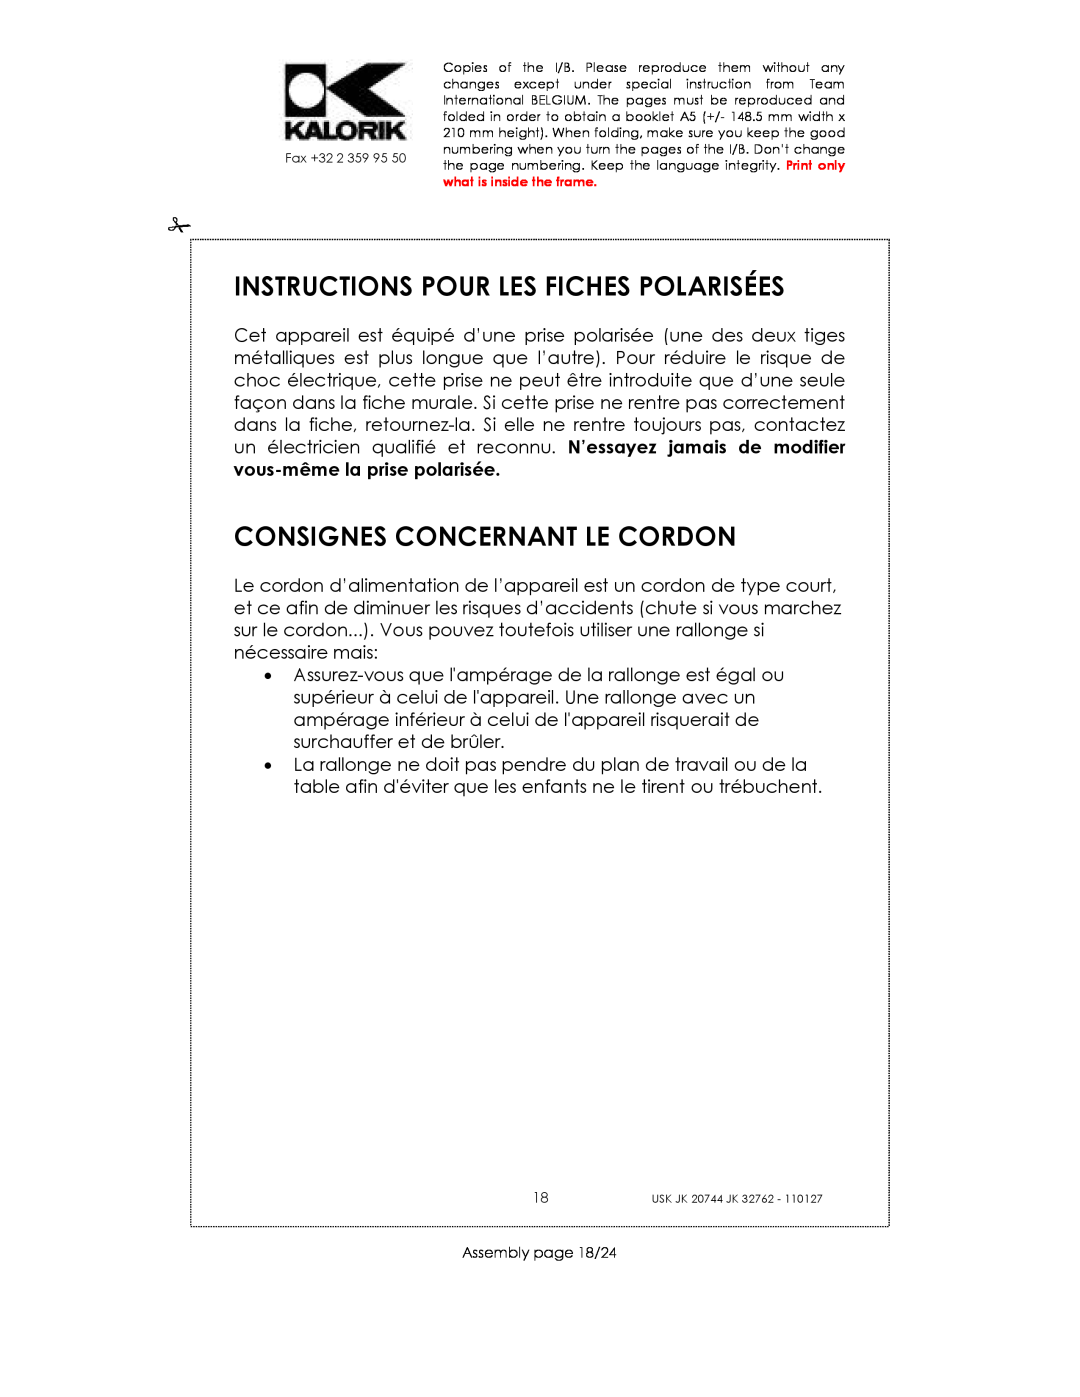 Kalorik USK JK 32762 manual Instructions Pour Les Fiches Polarisées, Consignes Concernant Le Cordon, Assembly page 18/24 